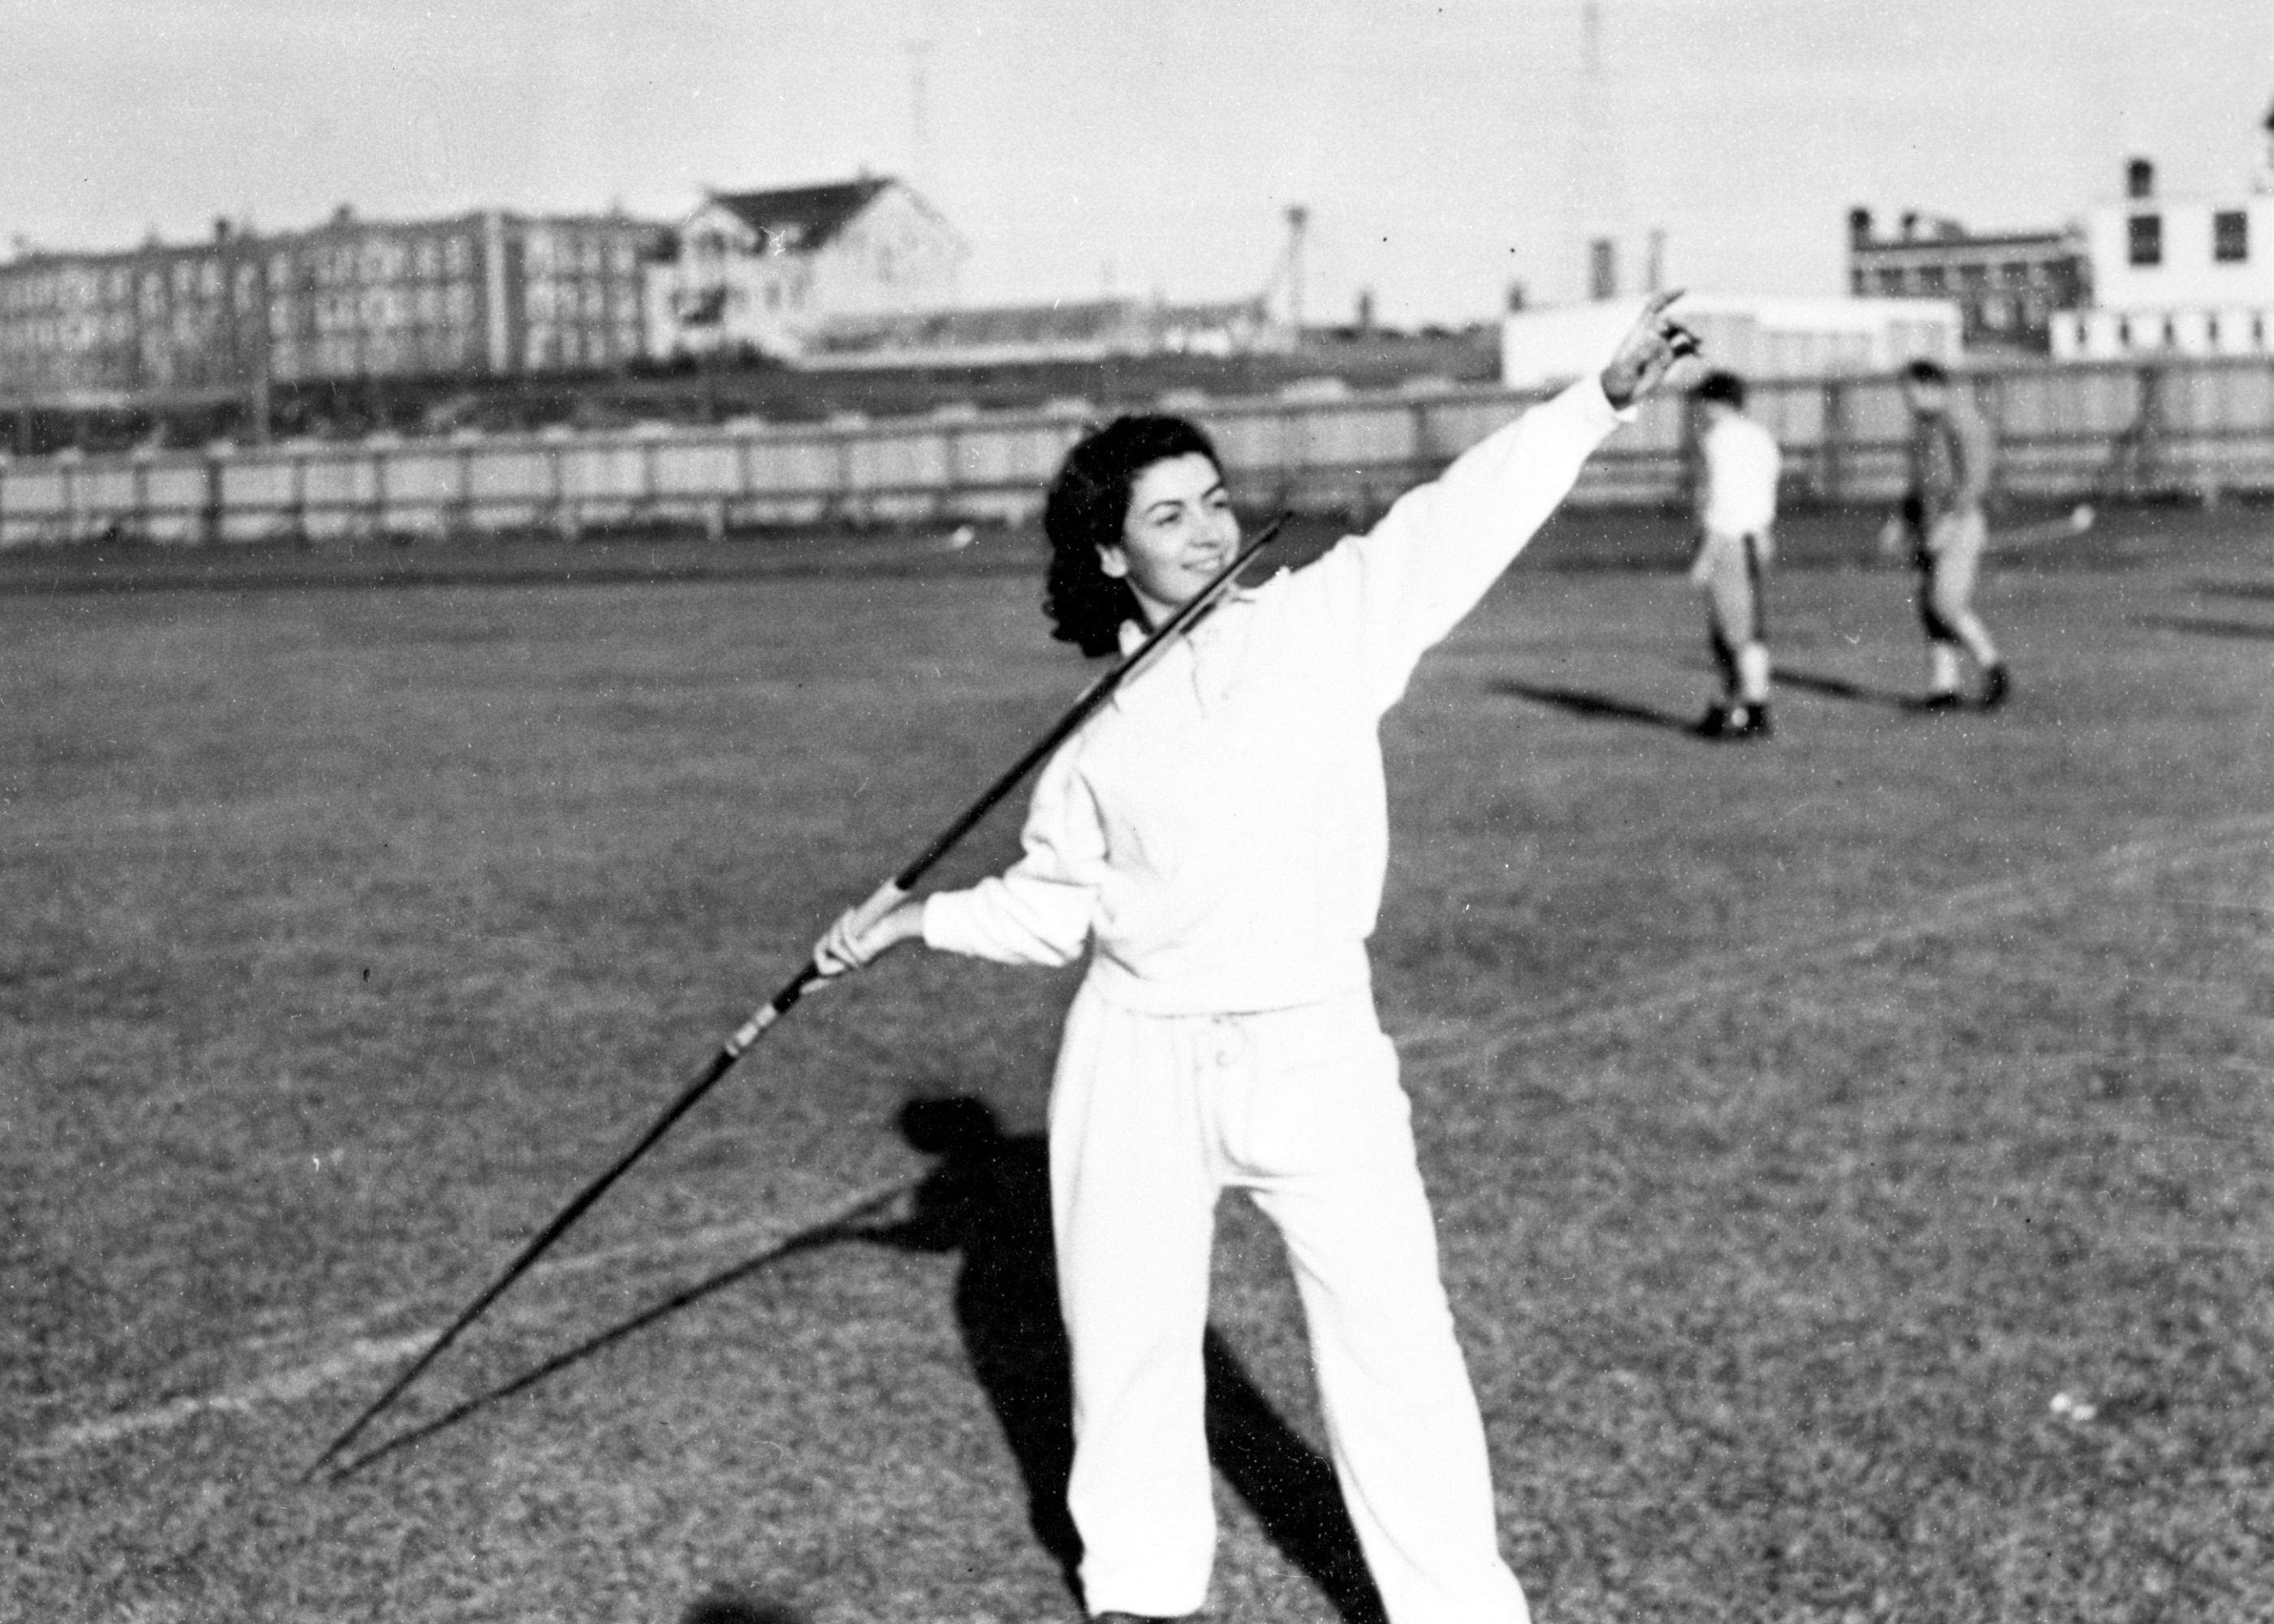 Doris Danner, javelin throw (October 1941)